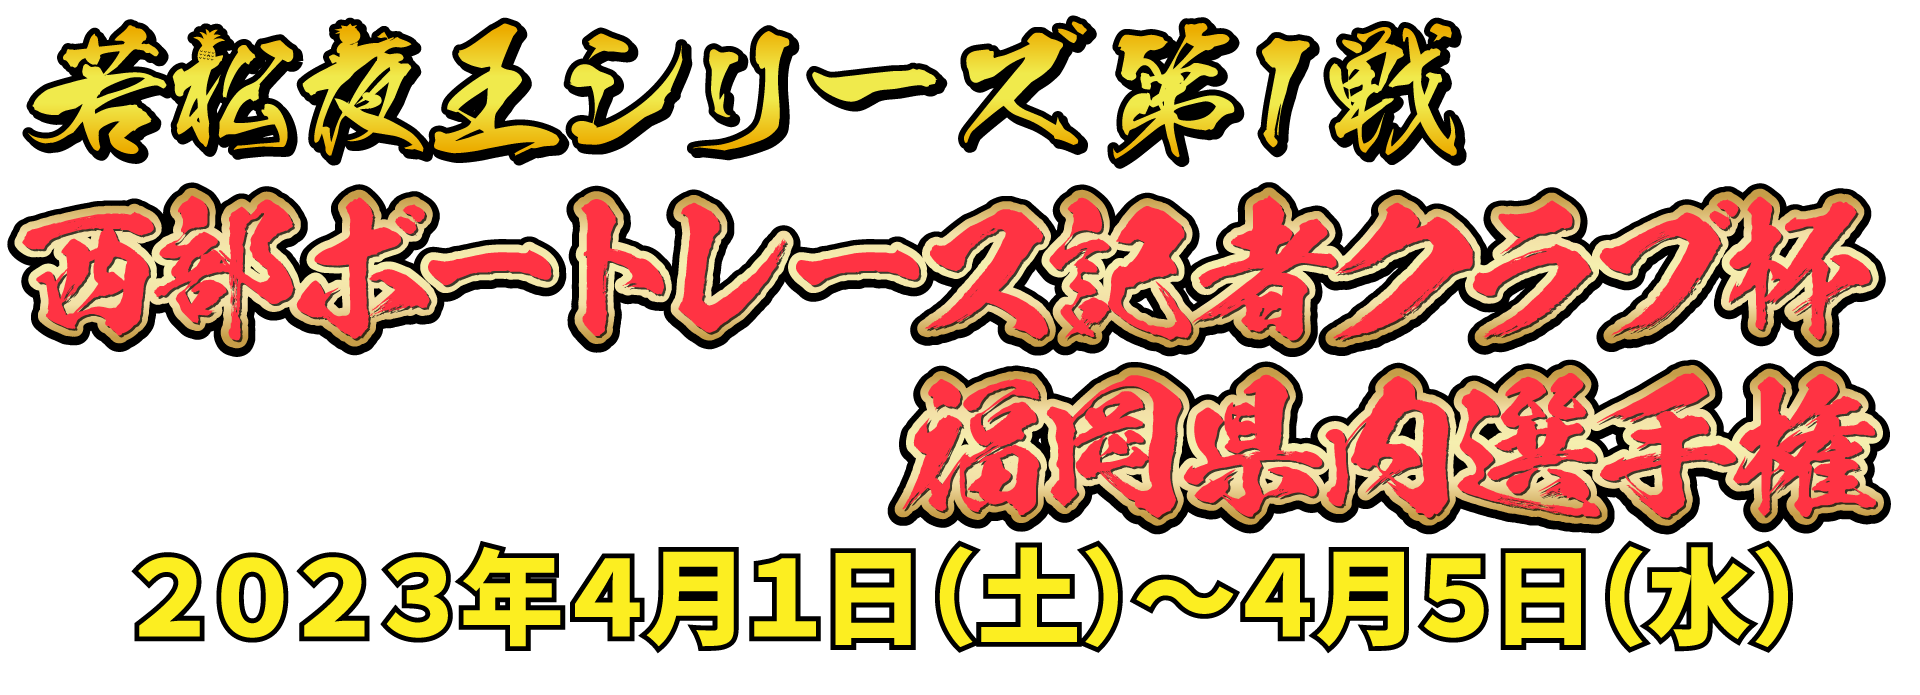 若松夜王シリーズ第1戦 ポカリスエットカップ 海属王決定戦 2021年7月23日(金)〜7月27日(火)